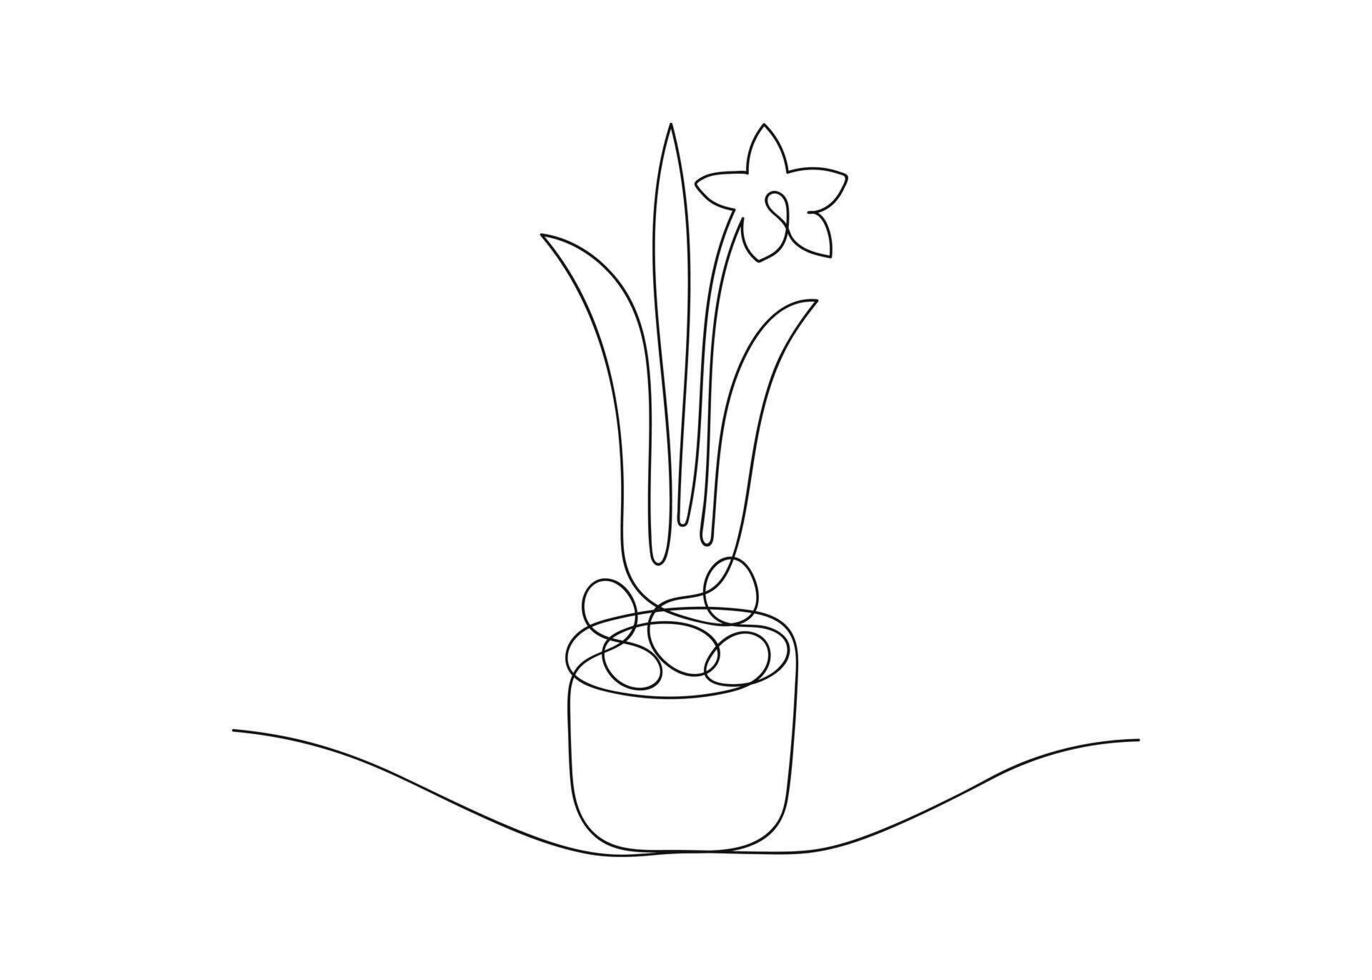 översikt påsk ägg och blomning narciss blomma i pott. festlig kontinuerlig ett linje teckning av ägg jägare begrepp. hand dragen vektor illustration i modern minimal stil för hälsning kort, affisch.